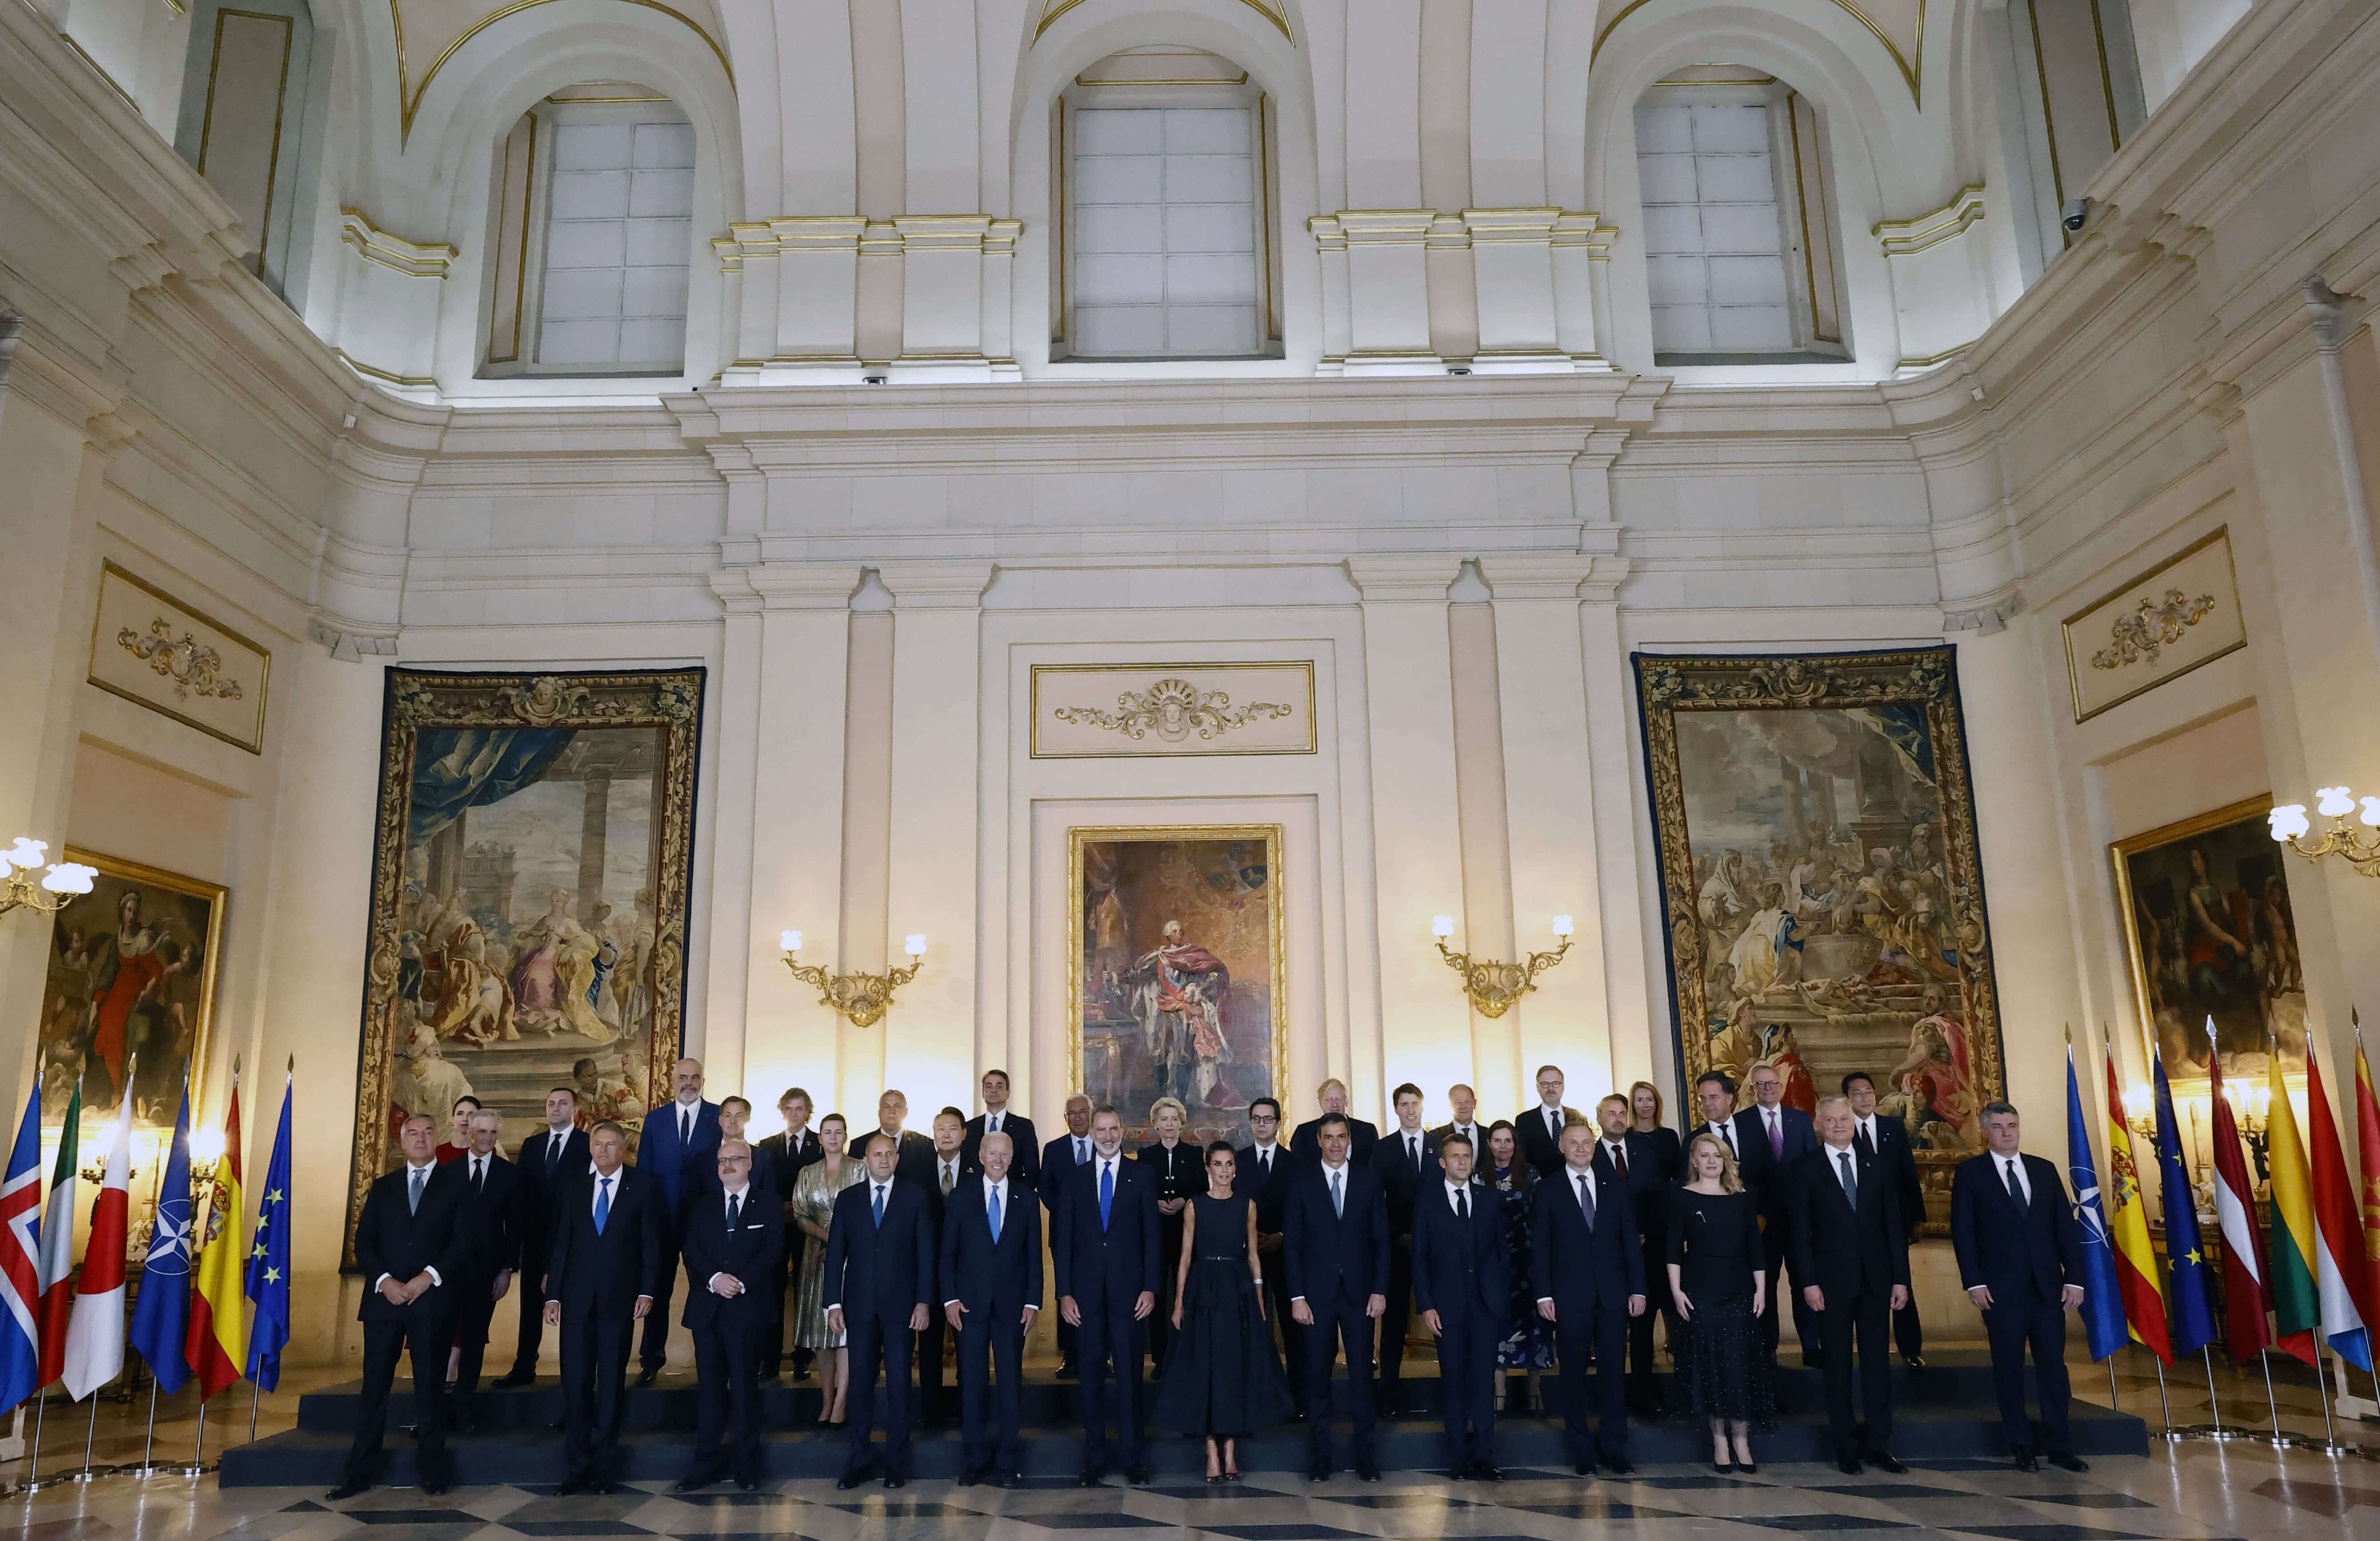 Foto de grupo de los asistentes a la cena ofrecida por SS. MM. los reyes a los jefes de Estado y de Gobierno asistentes a la Cumbre de la OTAN